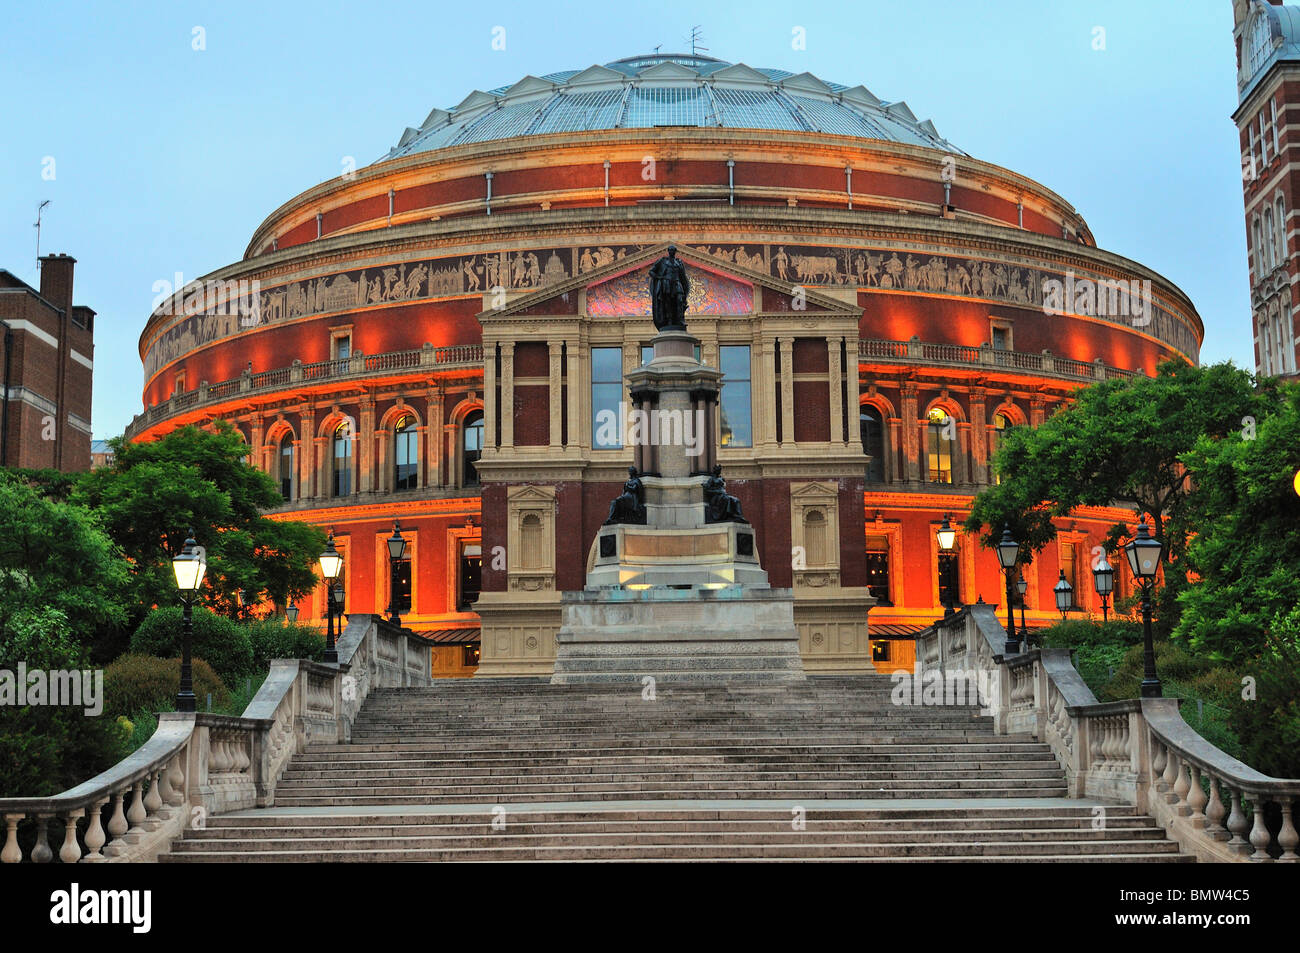 Royal Albert Hall at night Stock Photo